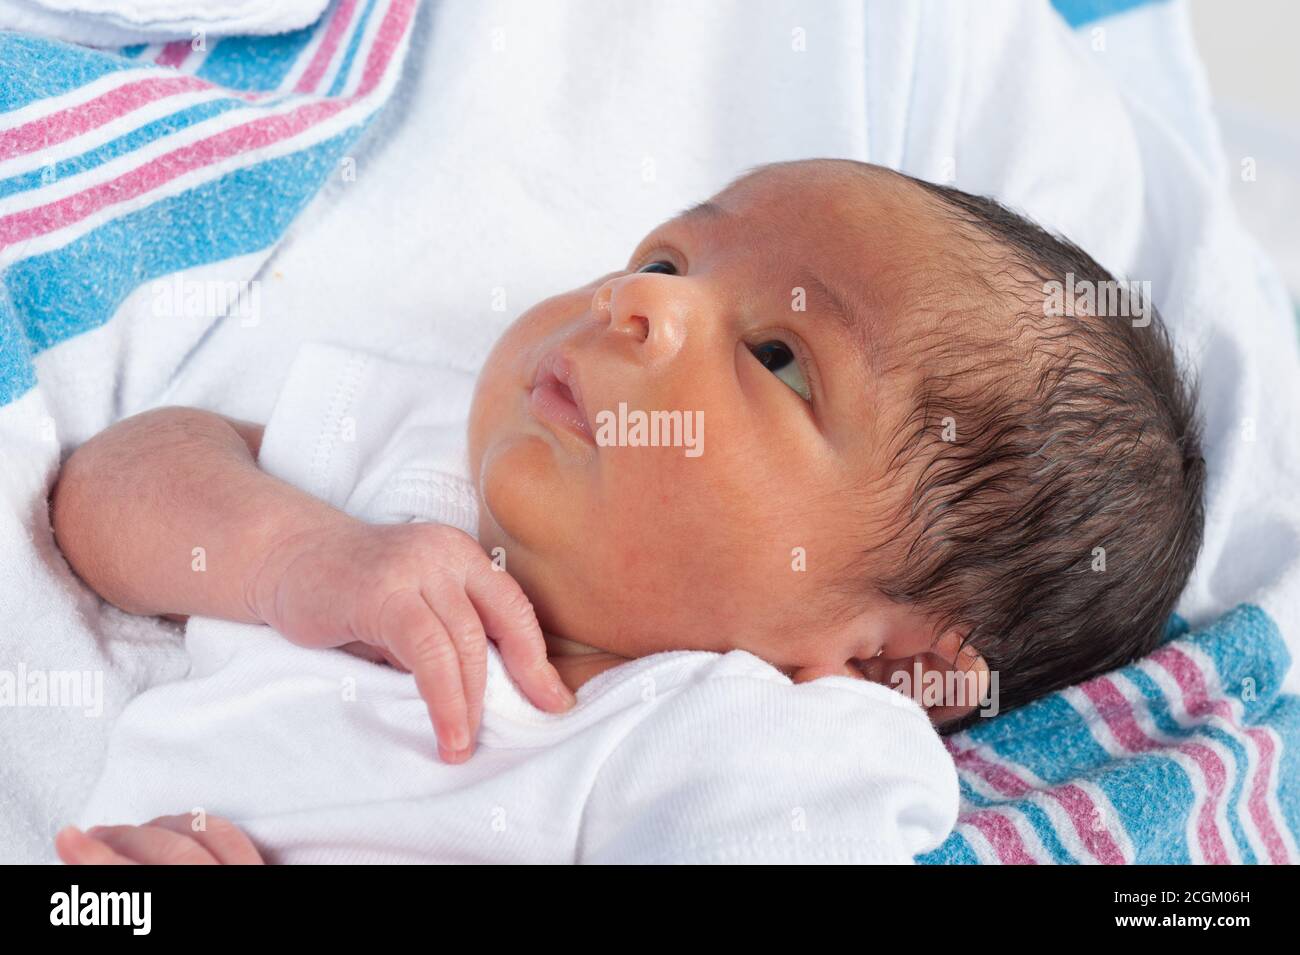 Newborn baby boy, 1 week old, closeup, held, looking up, skin slightly yellow from jaundice common in newborns Stock Photo